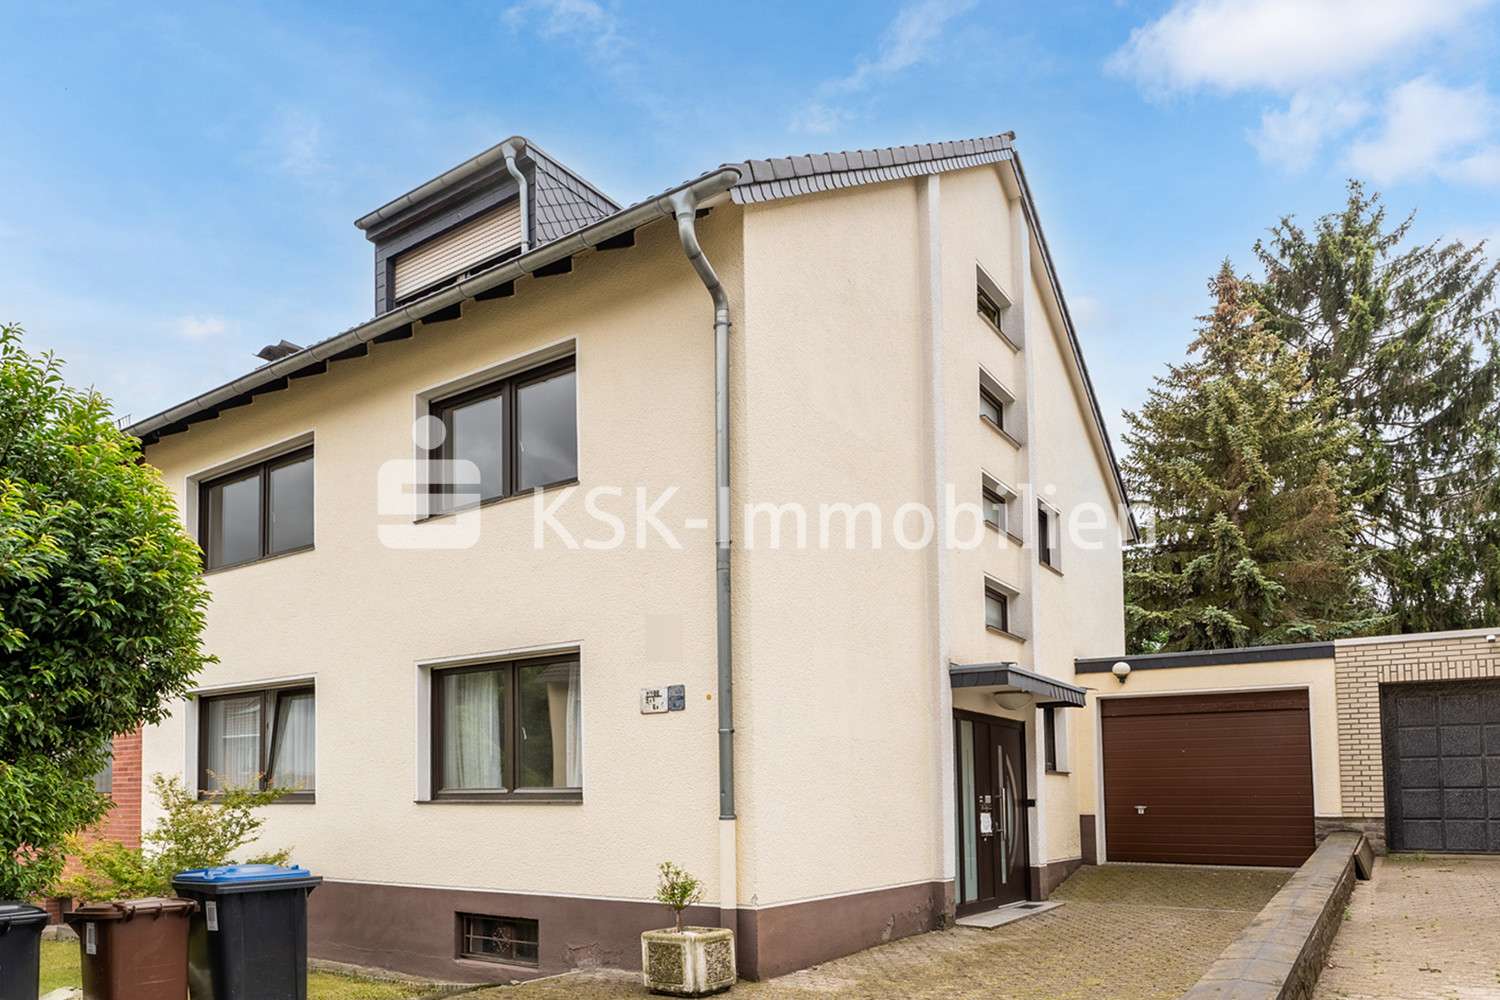 105585 Ansicht  - Zweifamilienhaus in 50321 Brühl mit 145m² kaufen